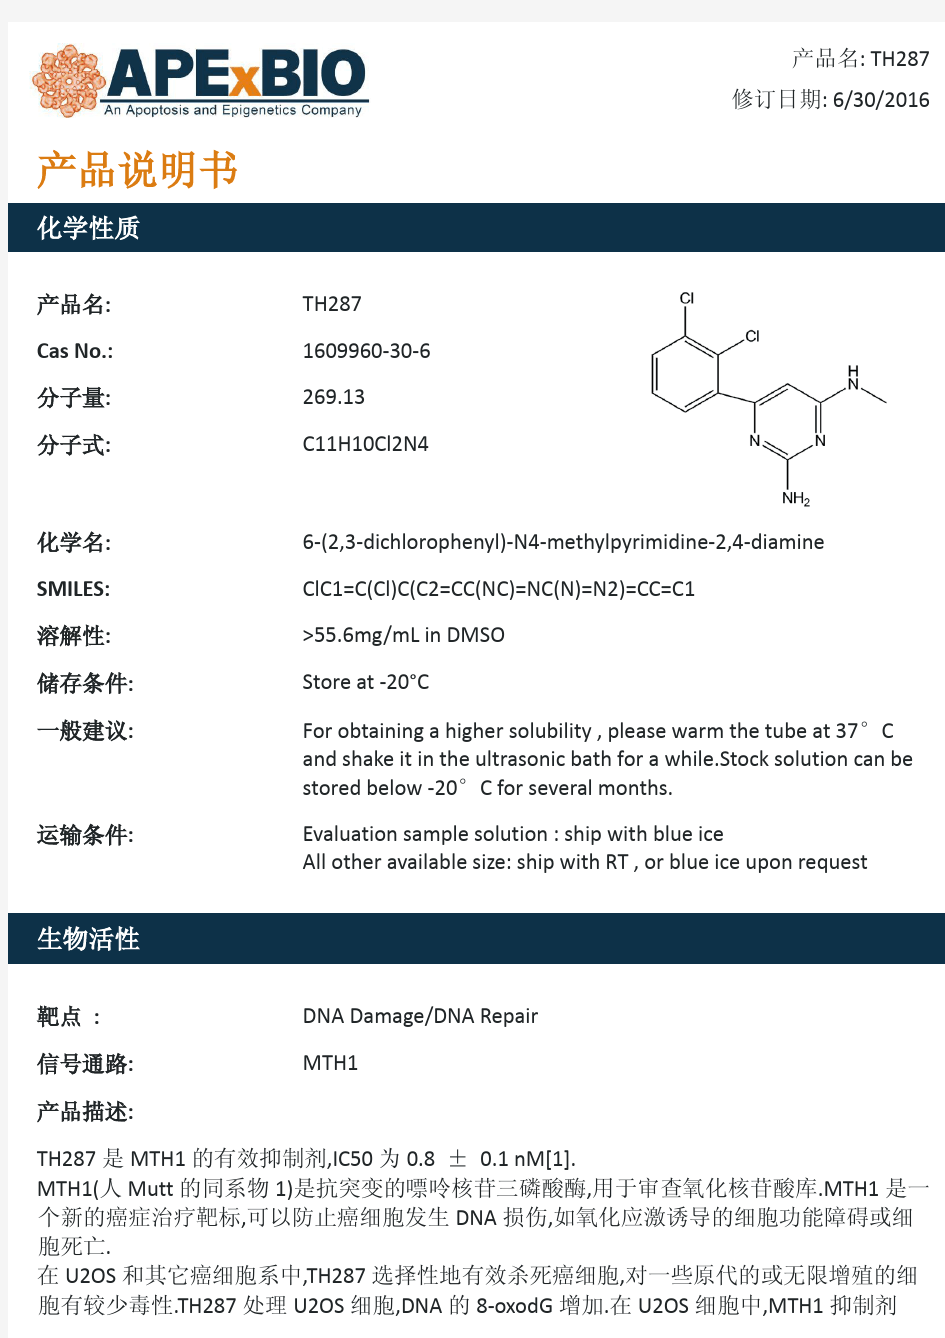 TH287_MTH1抑制剂_1609960-30-6_Apexbio